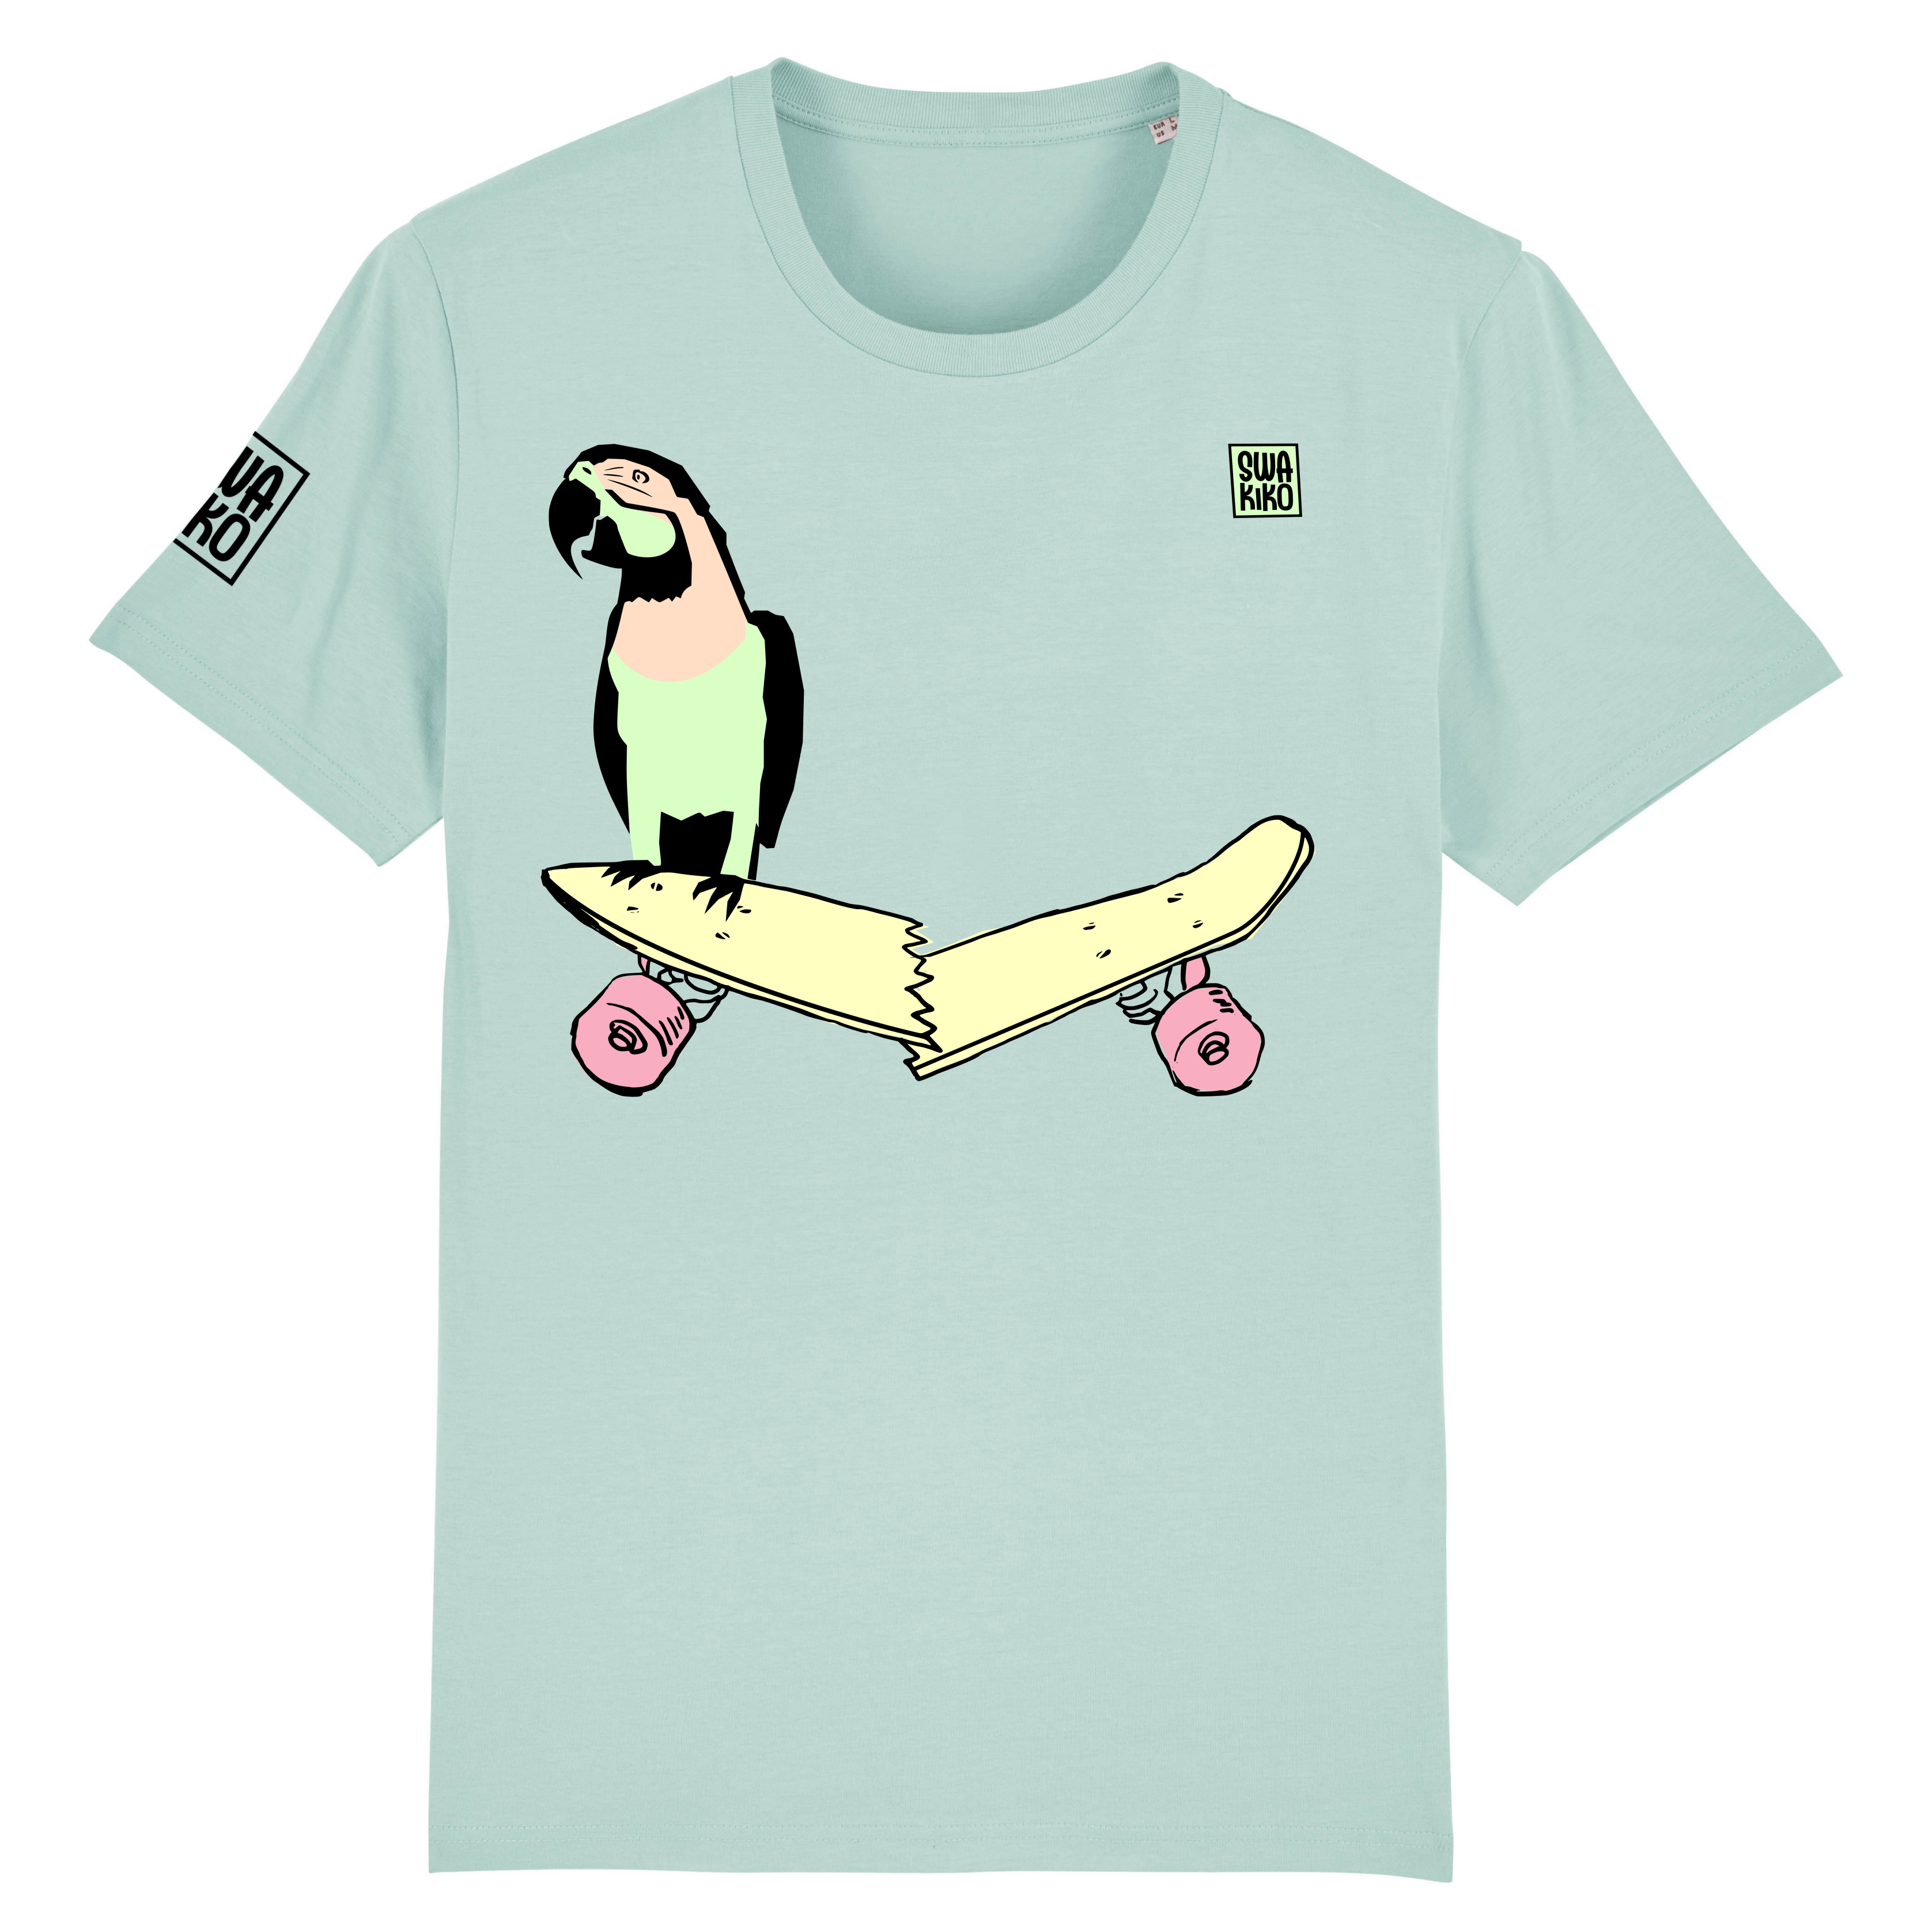 Skate T-shirt, parrot on skateboard, men, blue